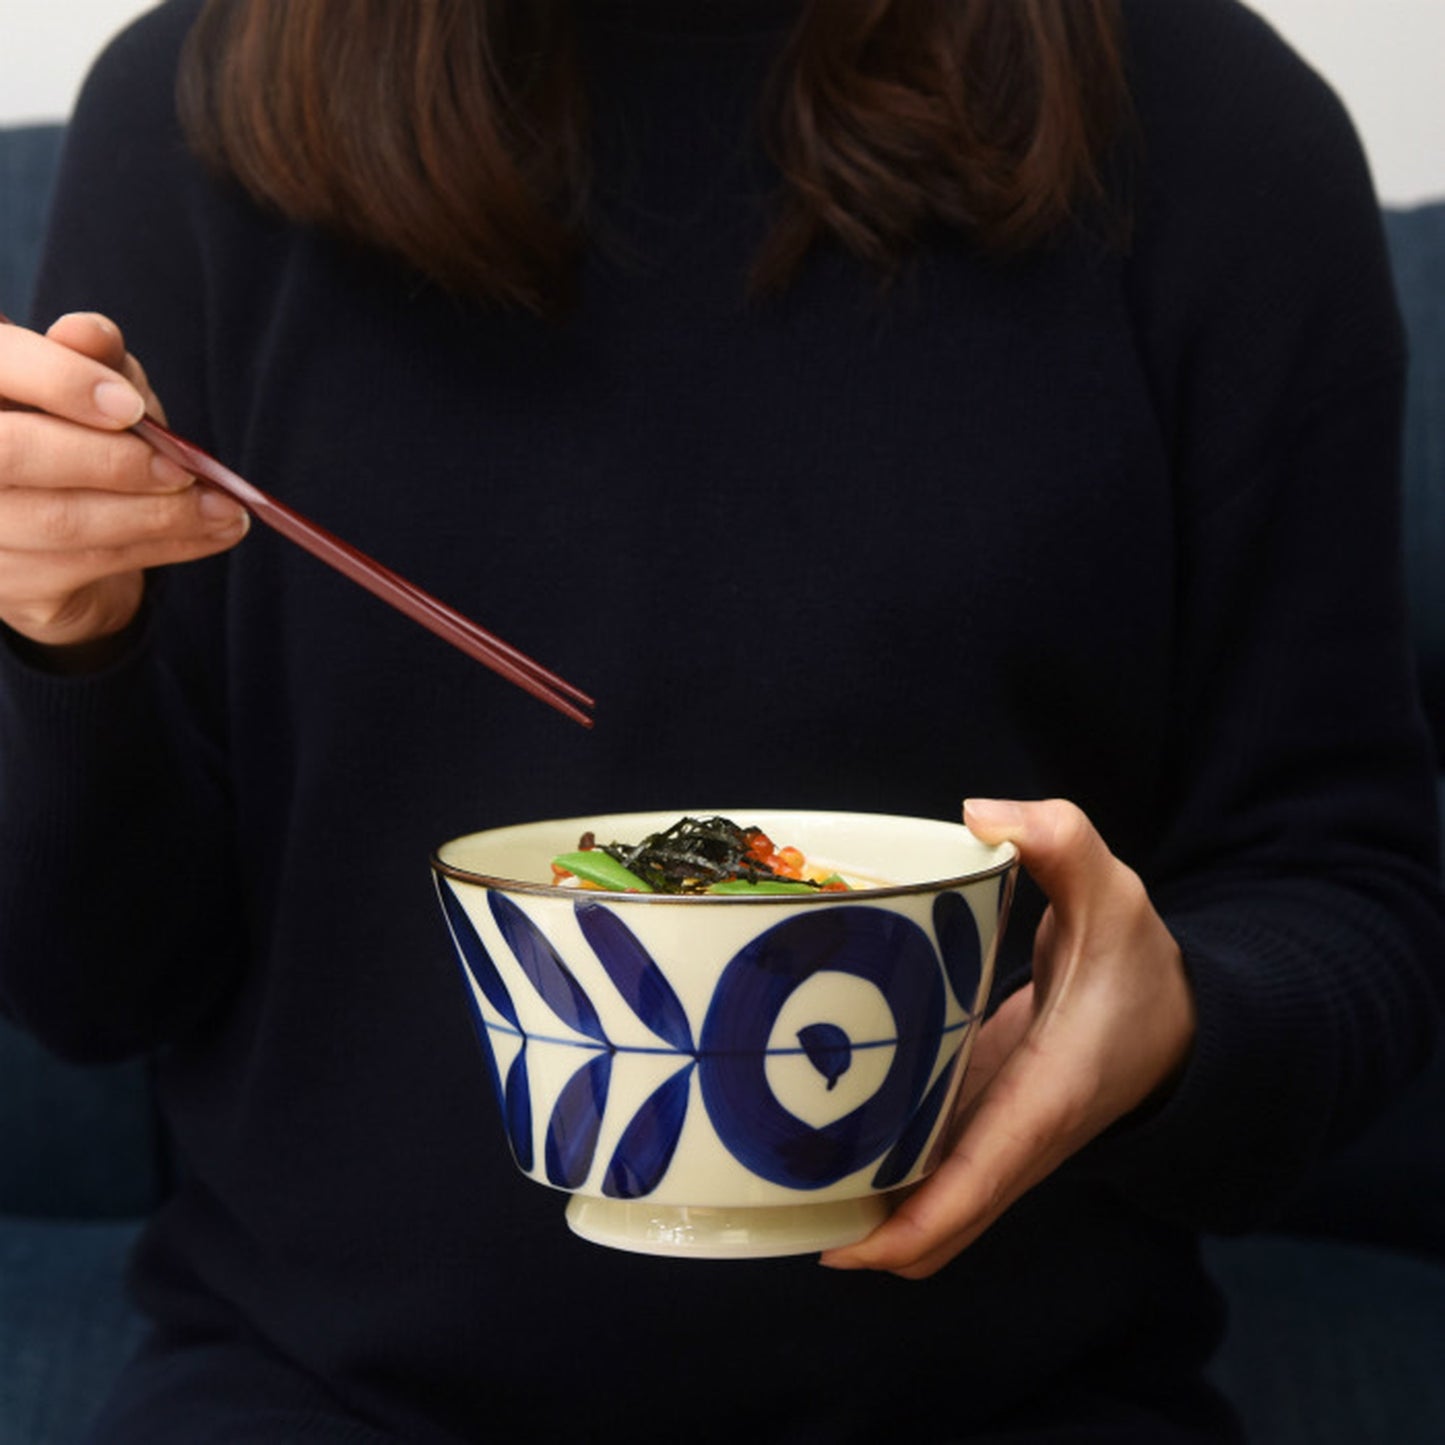 [natural69] [Kogashi Gosu] [Bowl] Hasami Ware Tableware Nordic Stylish Noodle Bowl Ramen Bowl Udon Bowl Japanese Style Japanese Pattern